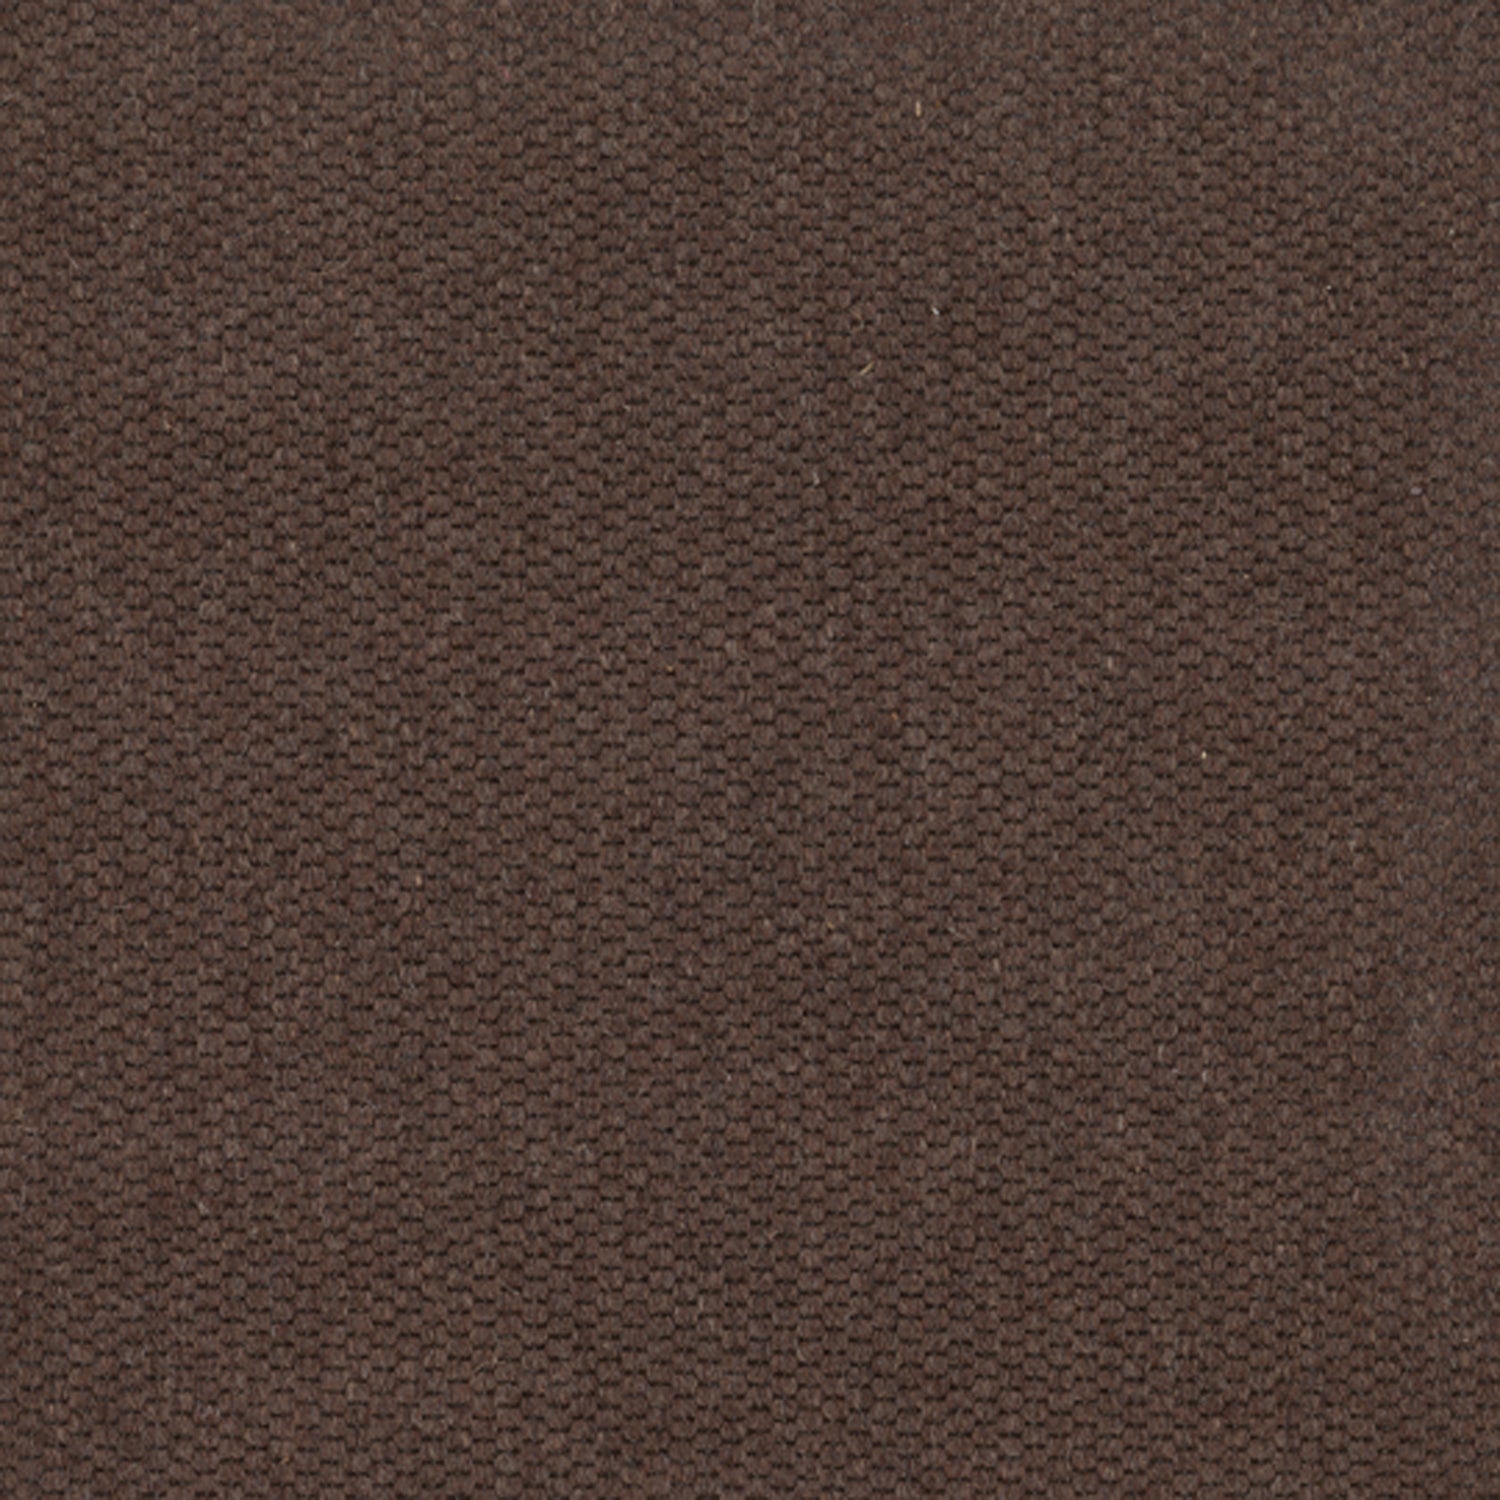 Wool broadloom carpet swatch in a flat grid weave in dark brown.